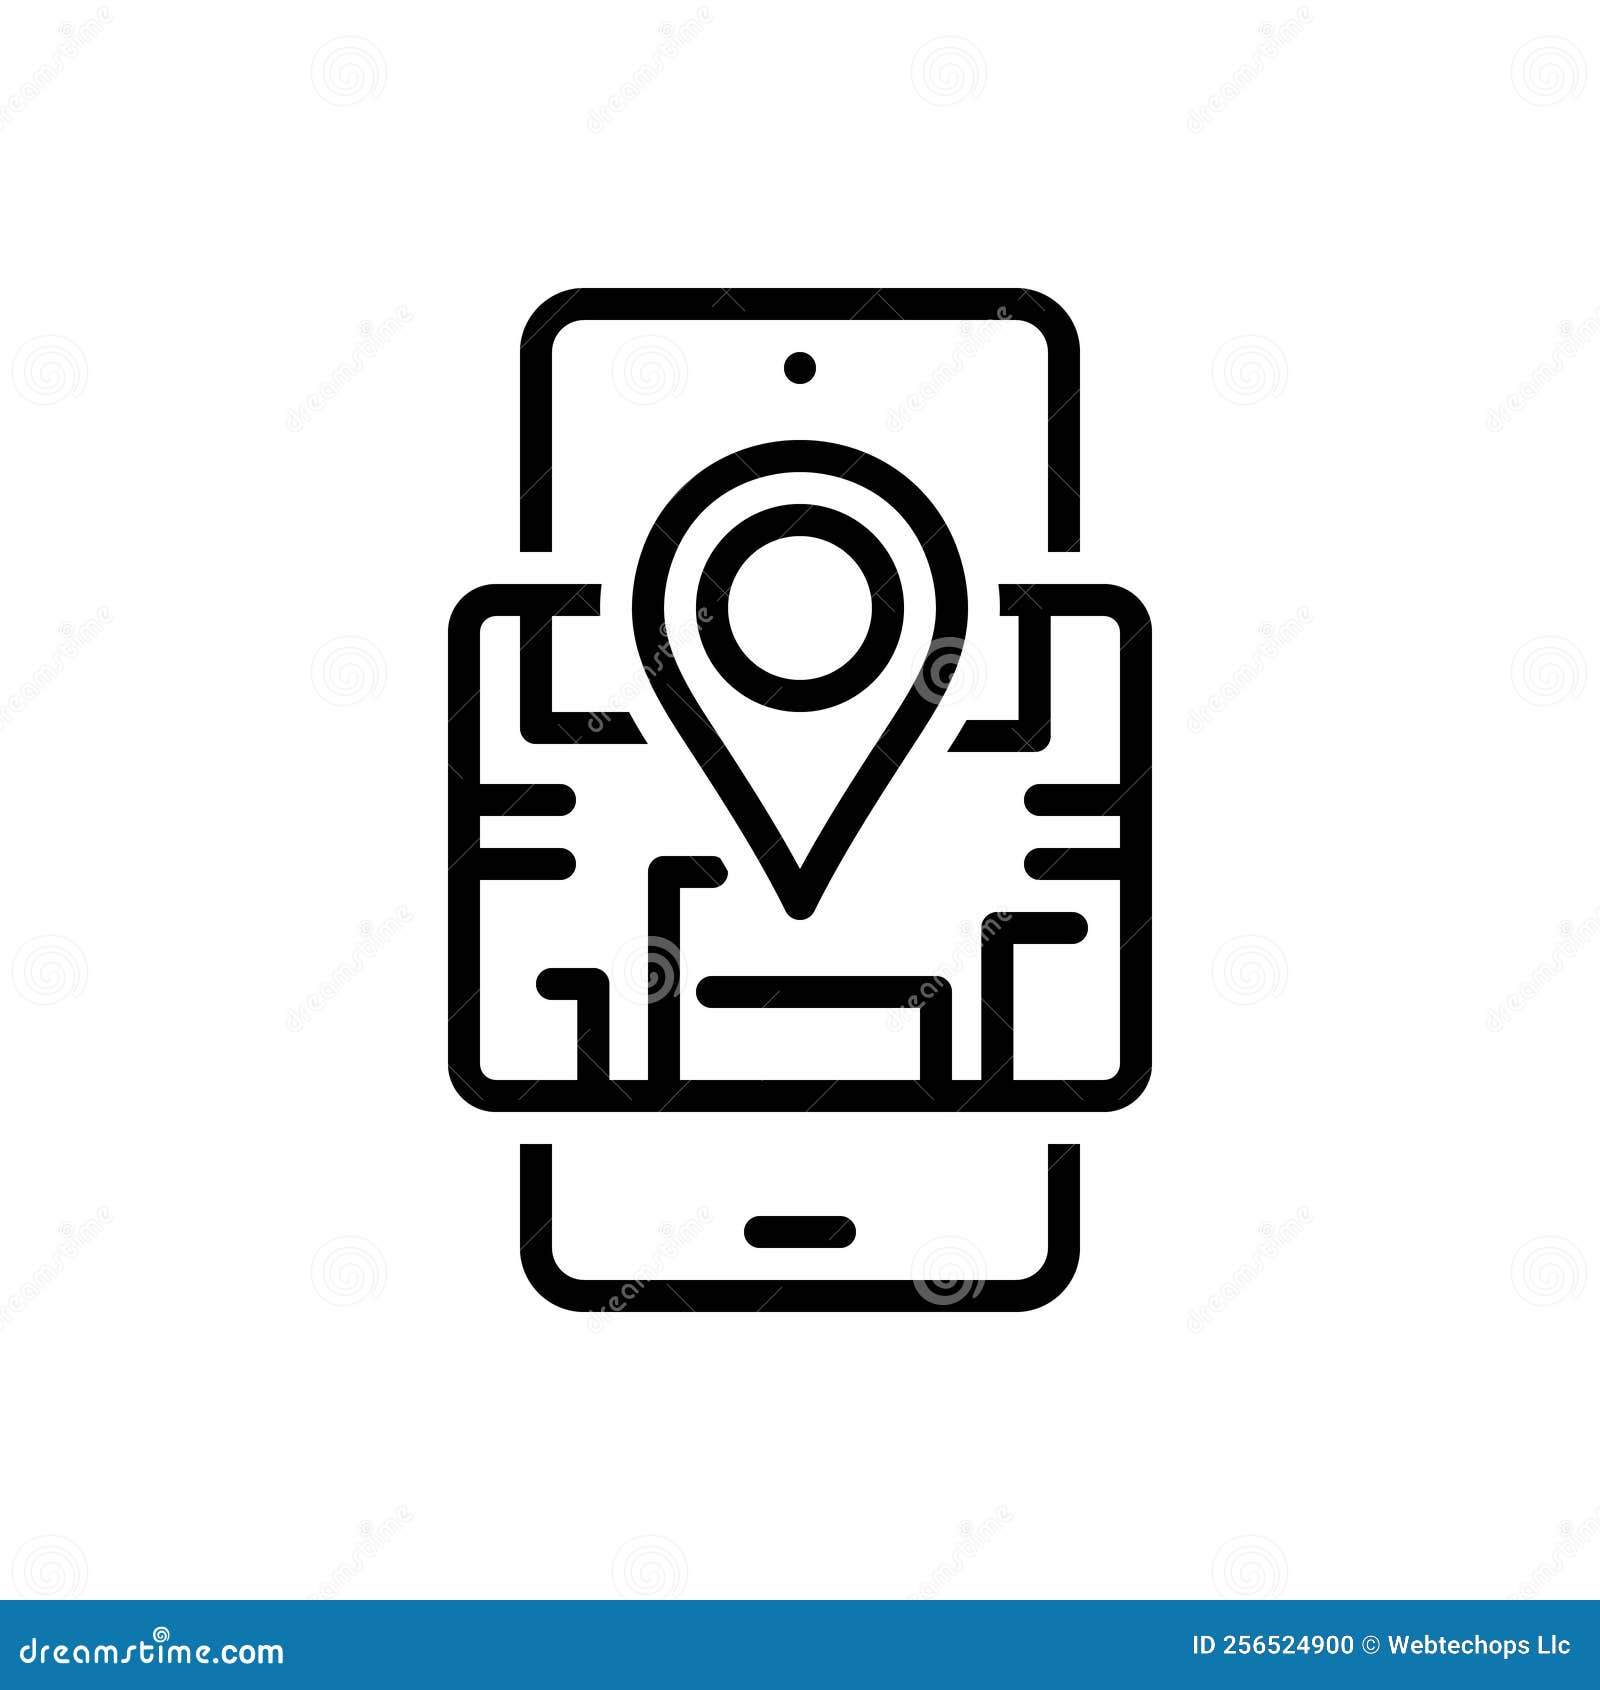 black line icon for venue, mobile and locale